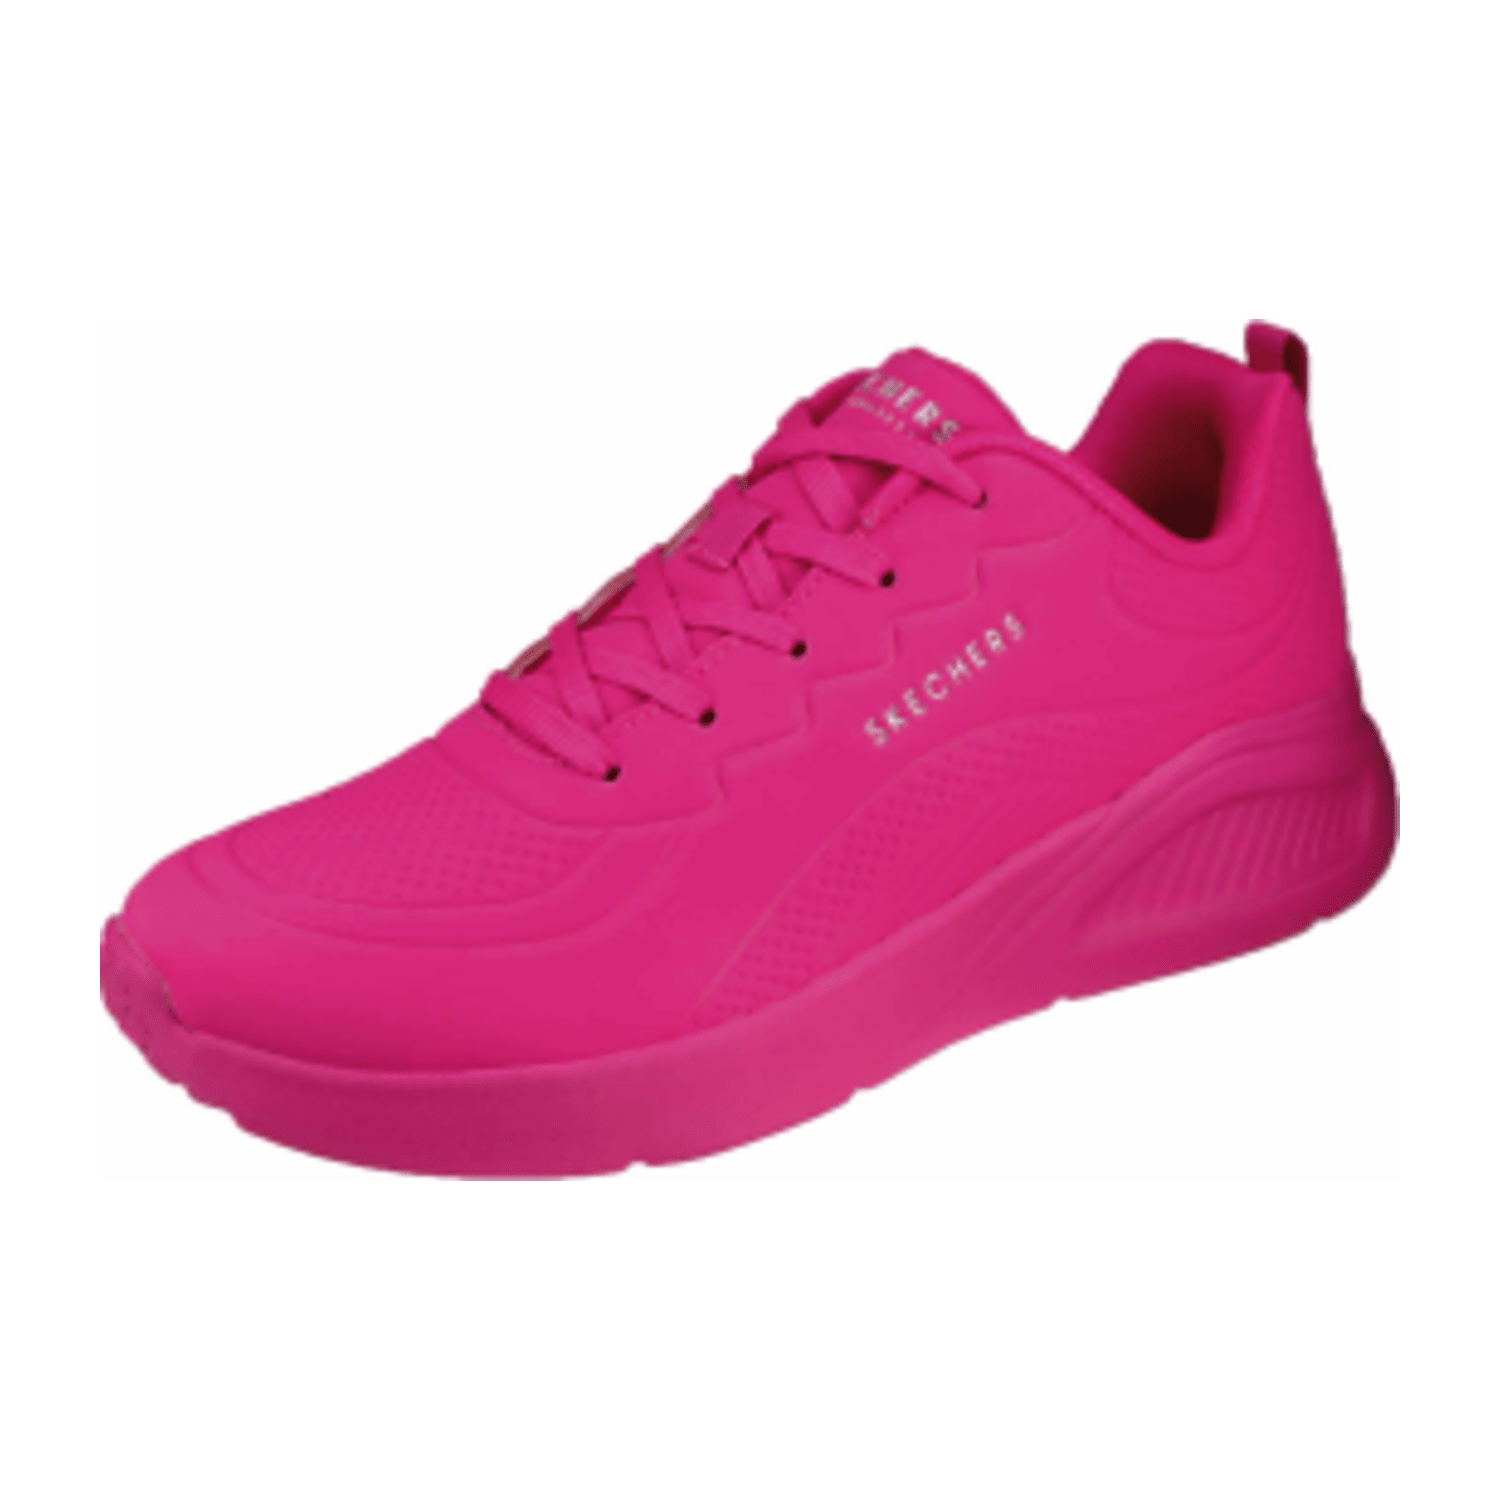 Skechers neon pink